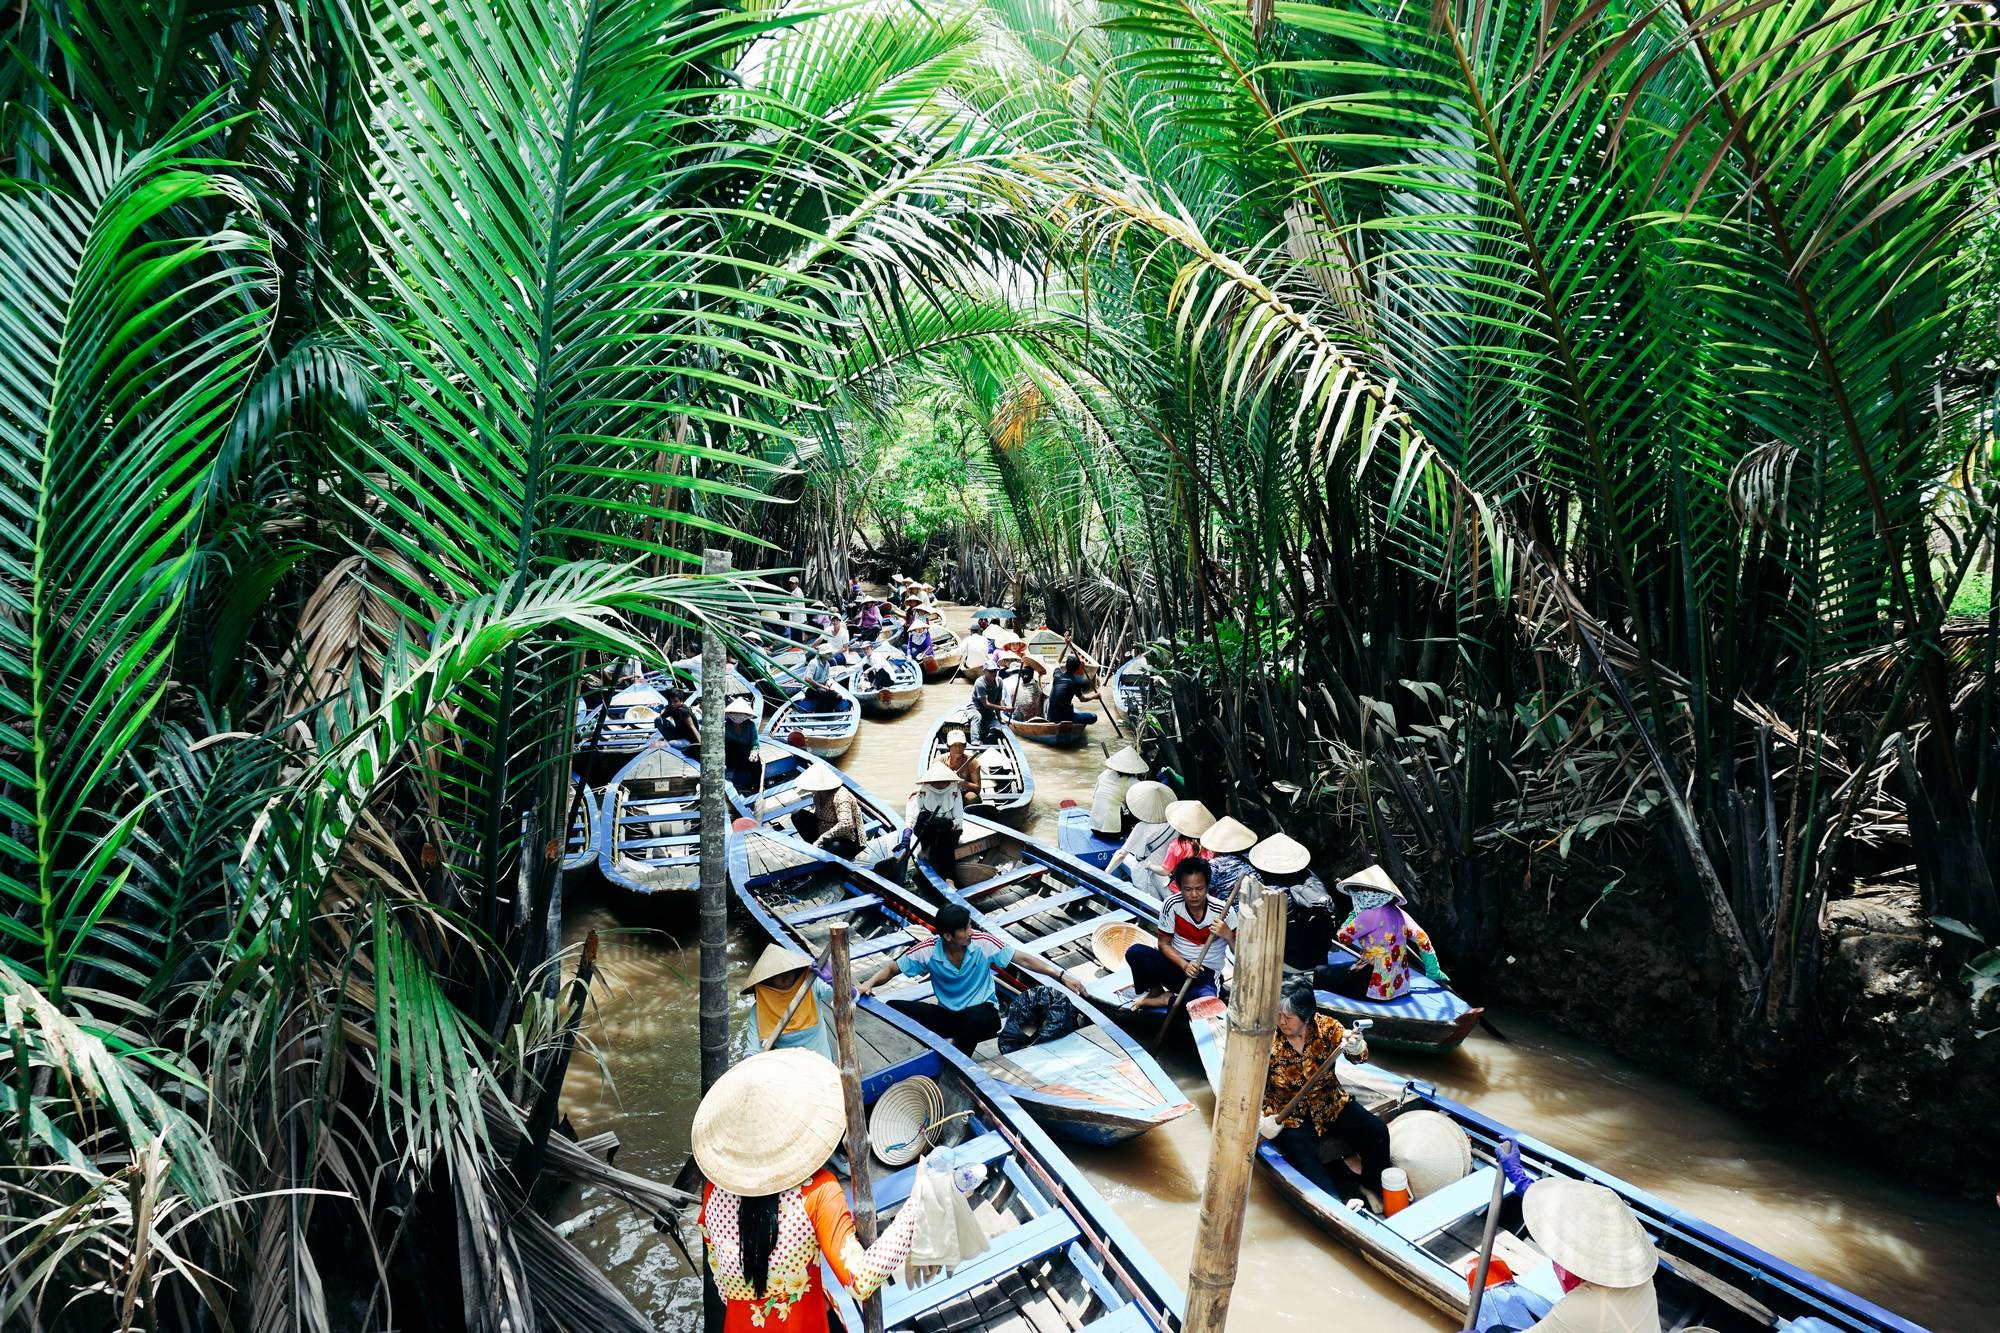 Несезон во вьетнаме: стоит ли лететь и что там делать? / блог chip.travel